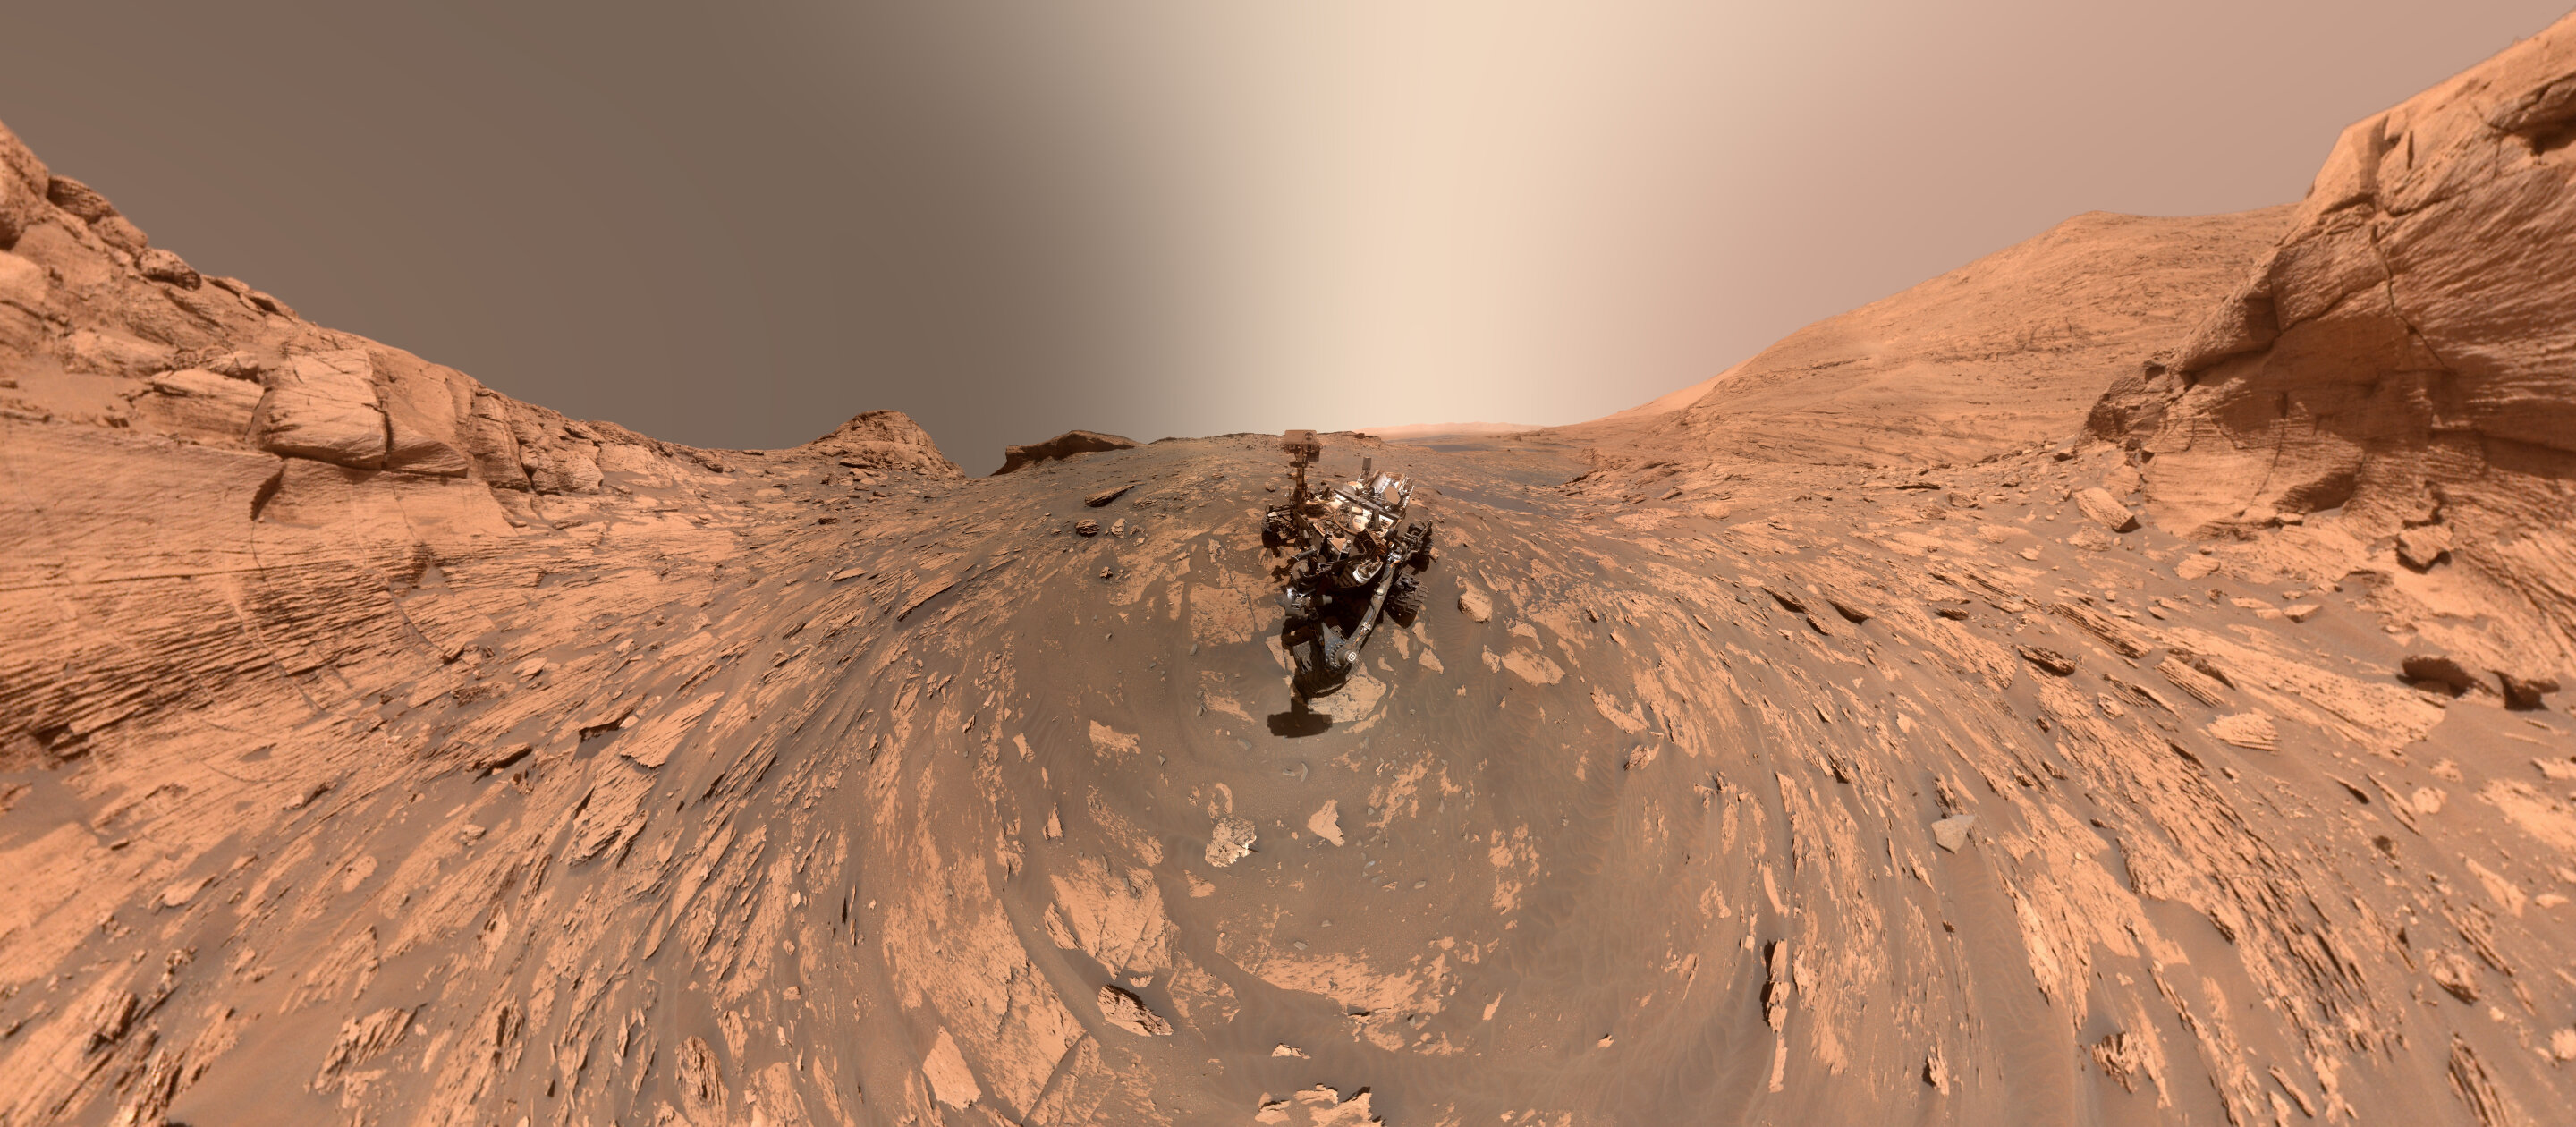 фрагмент цефалона на марсе варфрейм фото 114